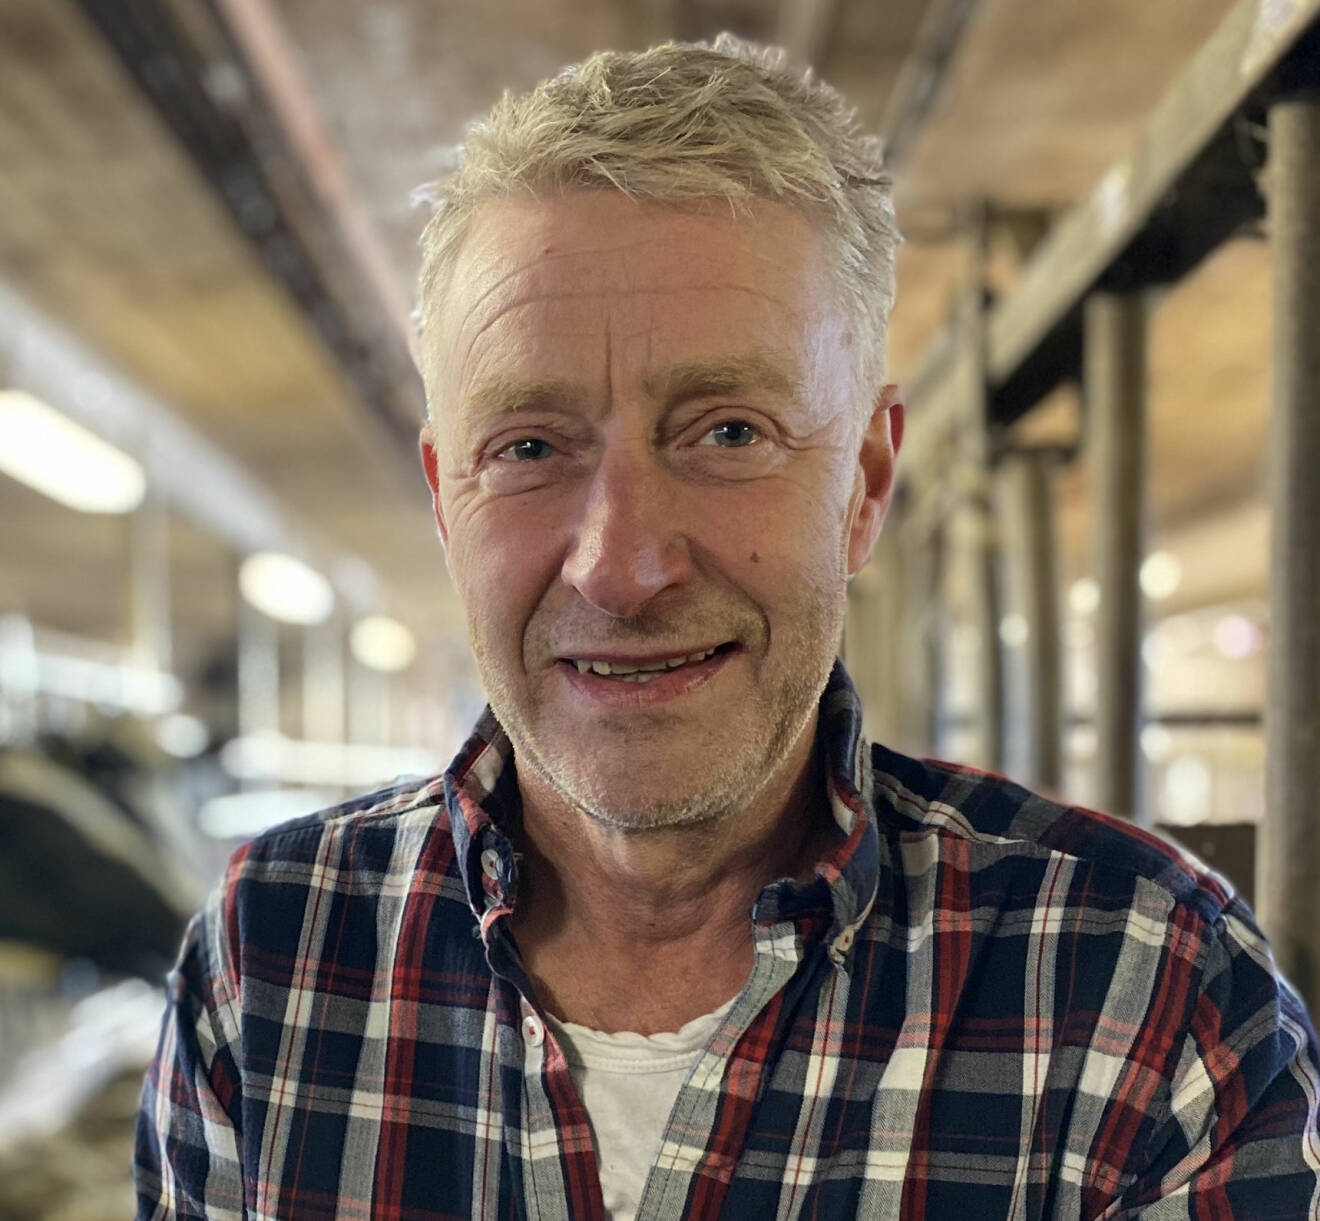 Mjölkbonden Pär Eric ”Peja” Nilsson som är en av deltagarna i Bonde söker fru 2021.